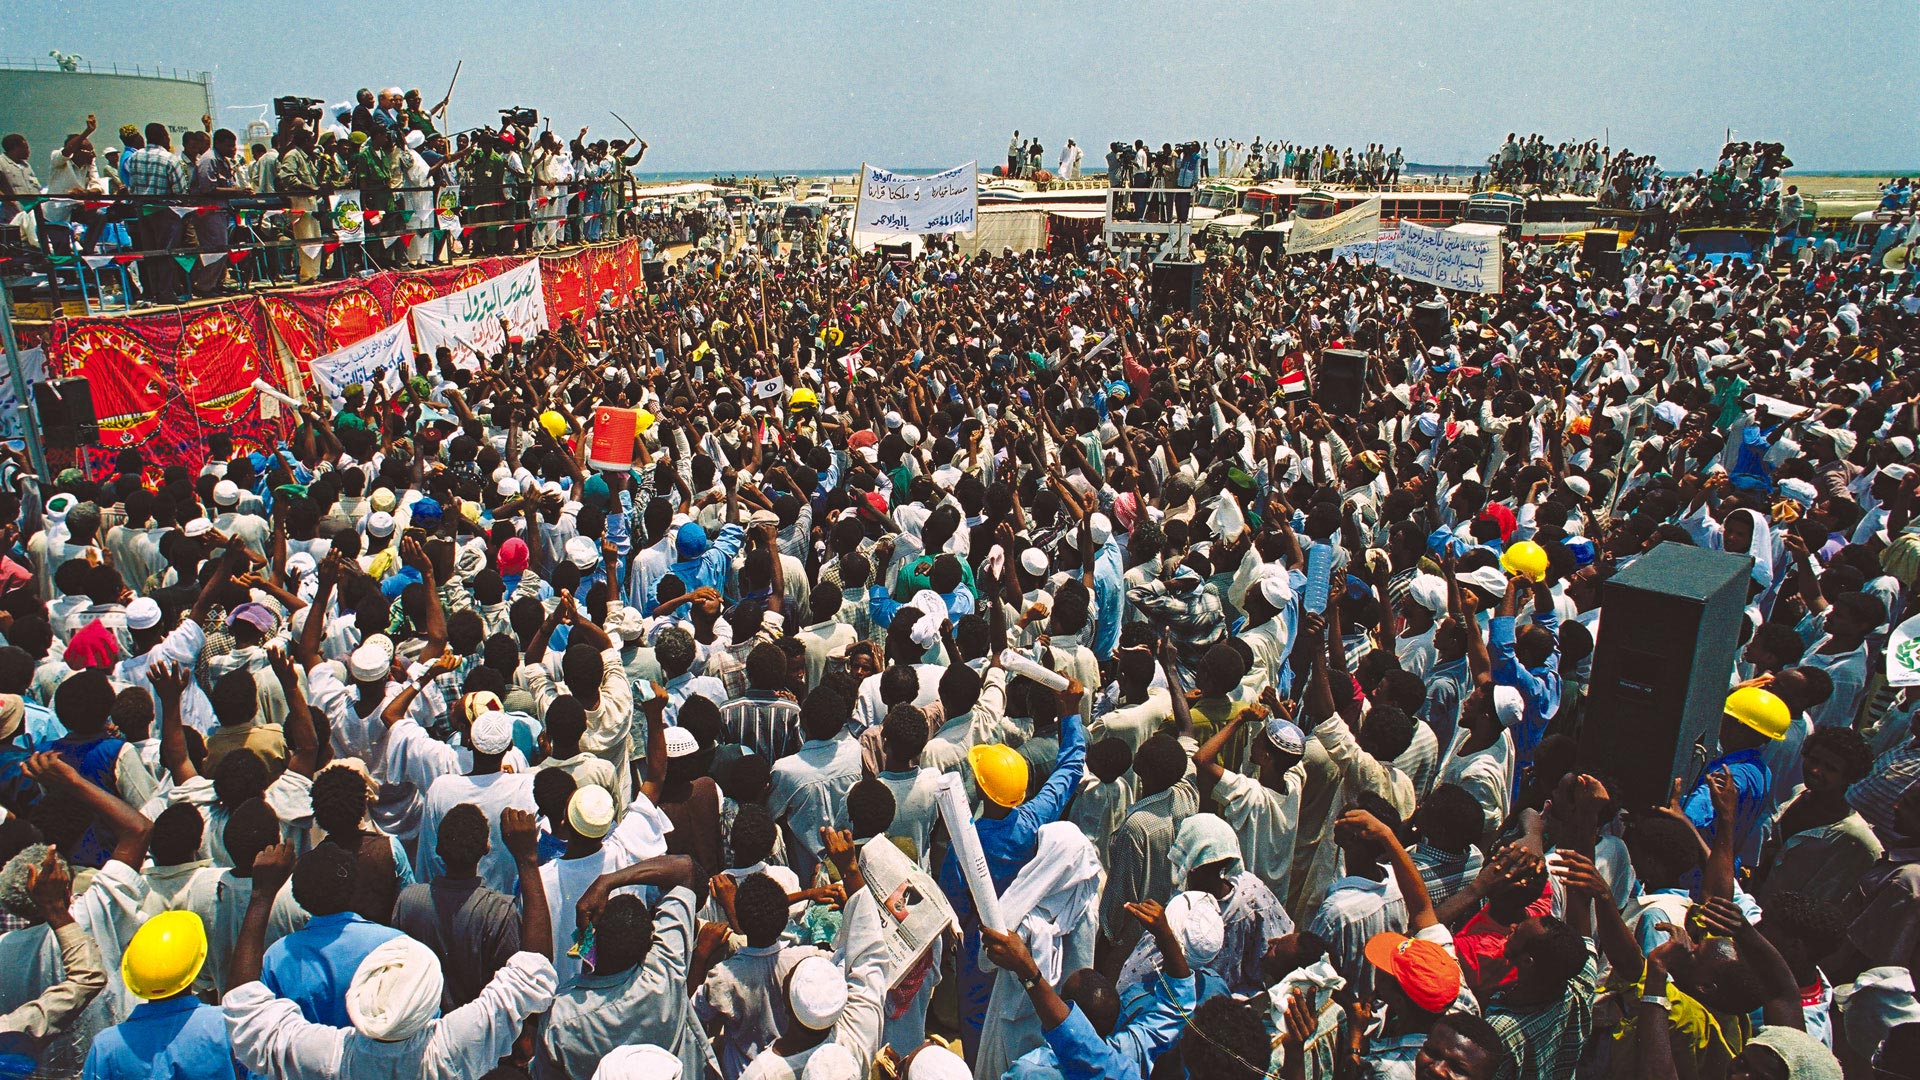 【蘇丹樣本】                     石油節上慶祝的人群。                                  隱藏文字說明